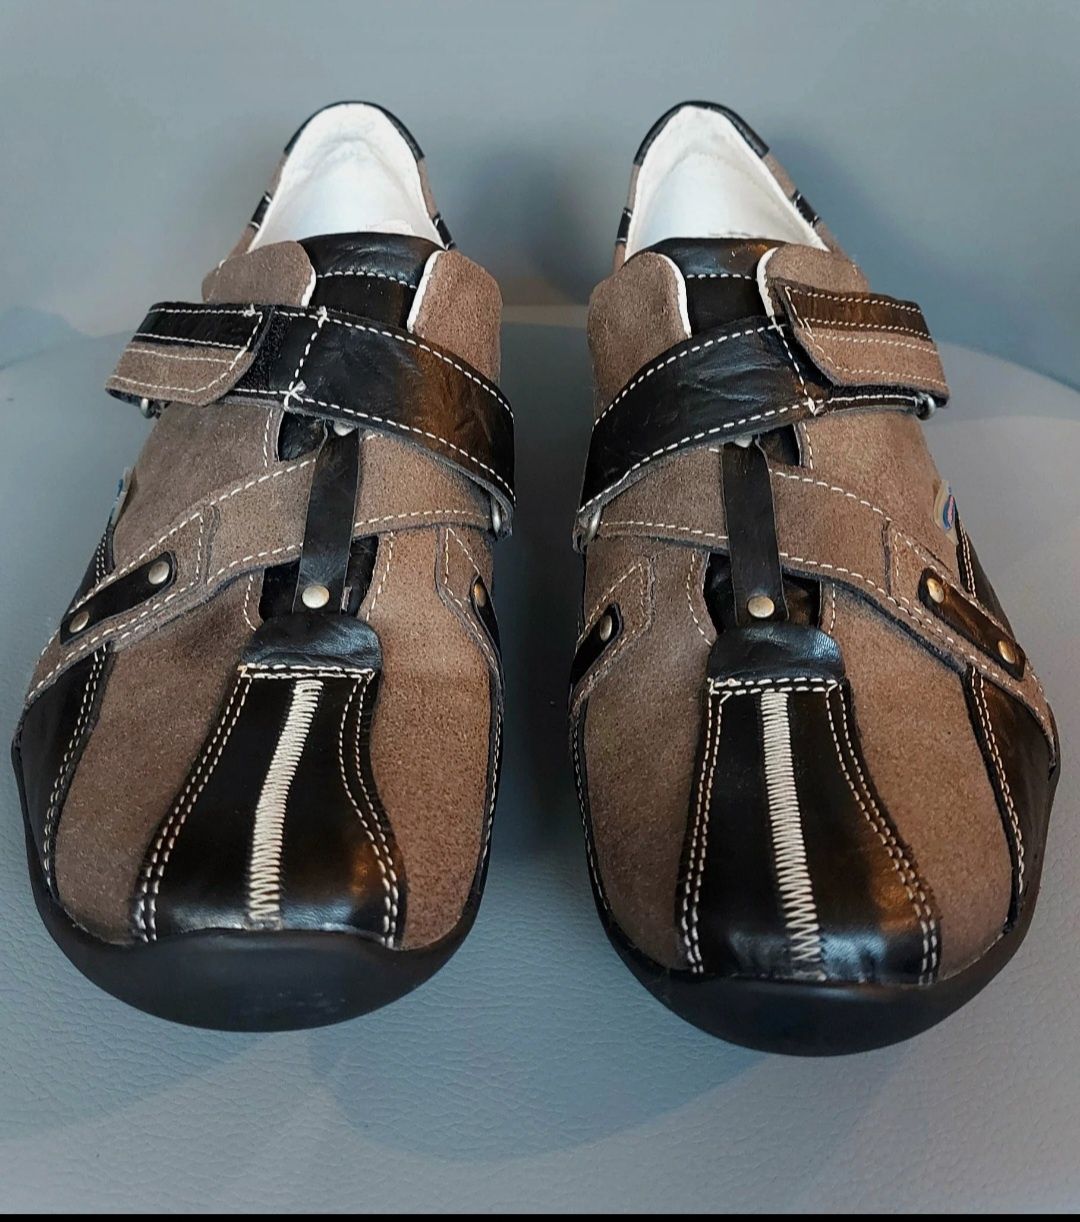 Nowe brązowo-czarne męskie buty skórzane Avanti 43